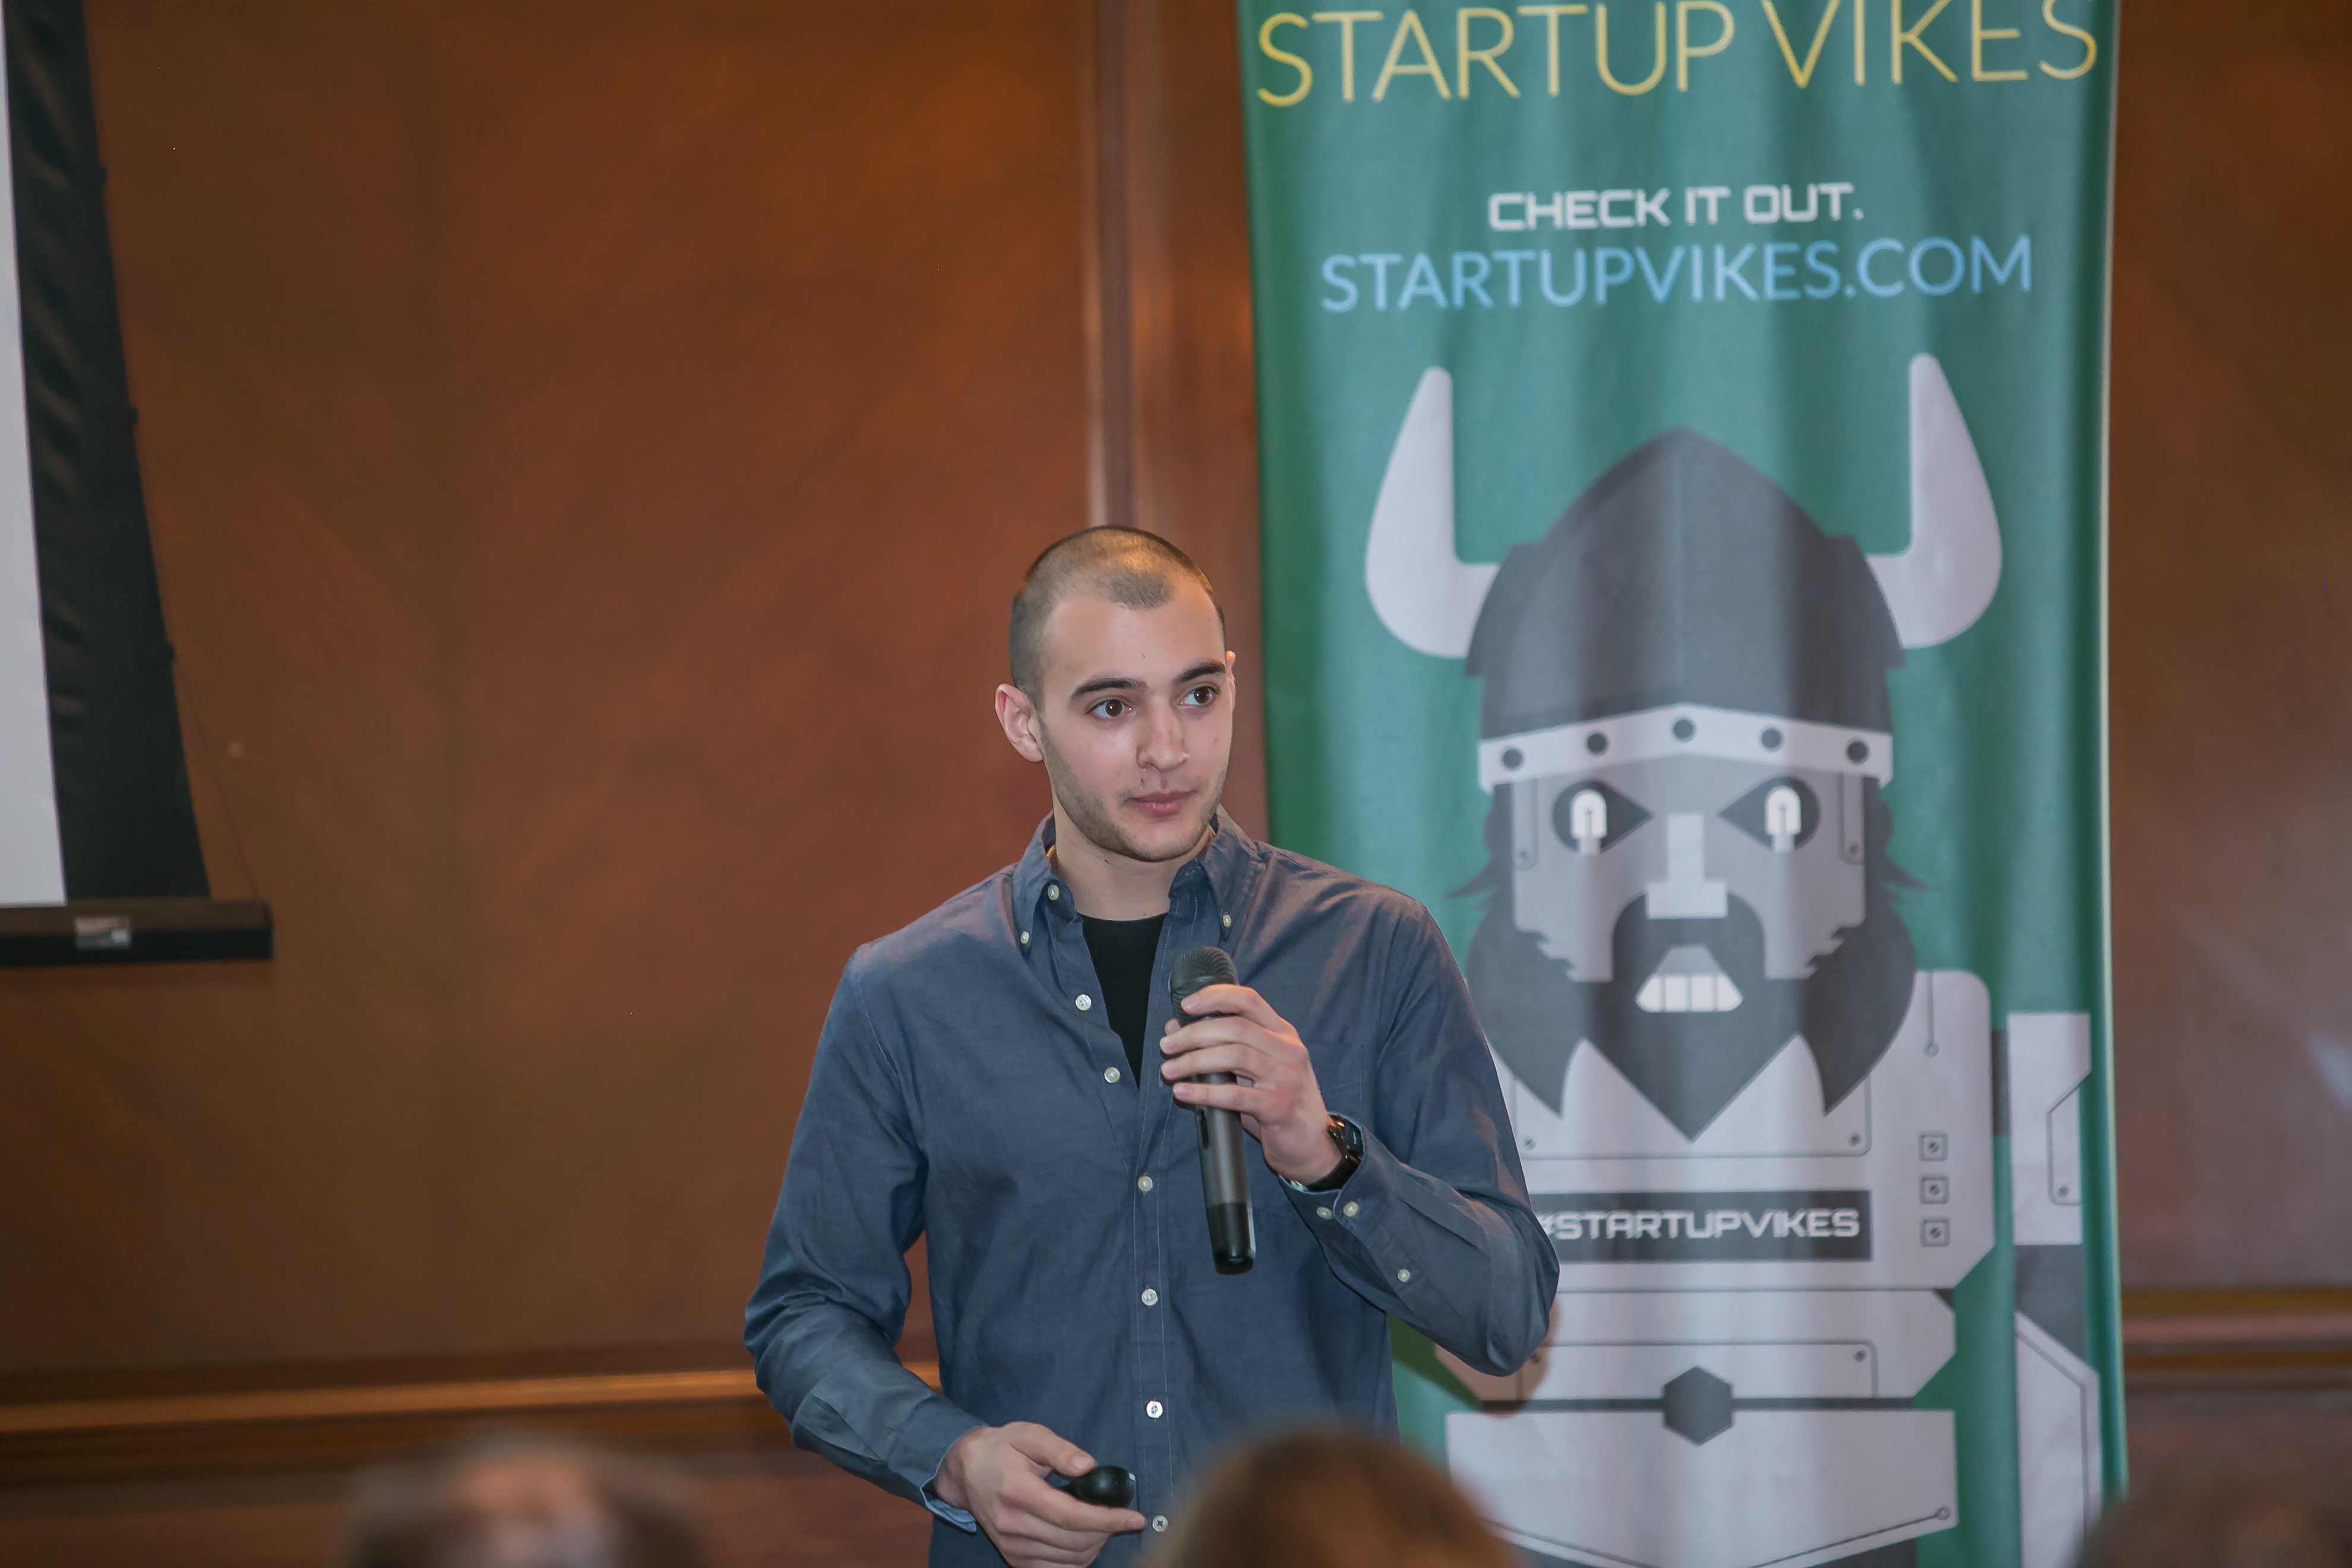 Anthony Gasparro, Startup Vikes 2015 Winner